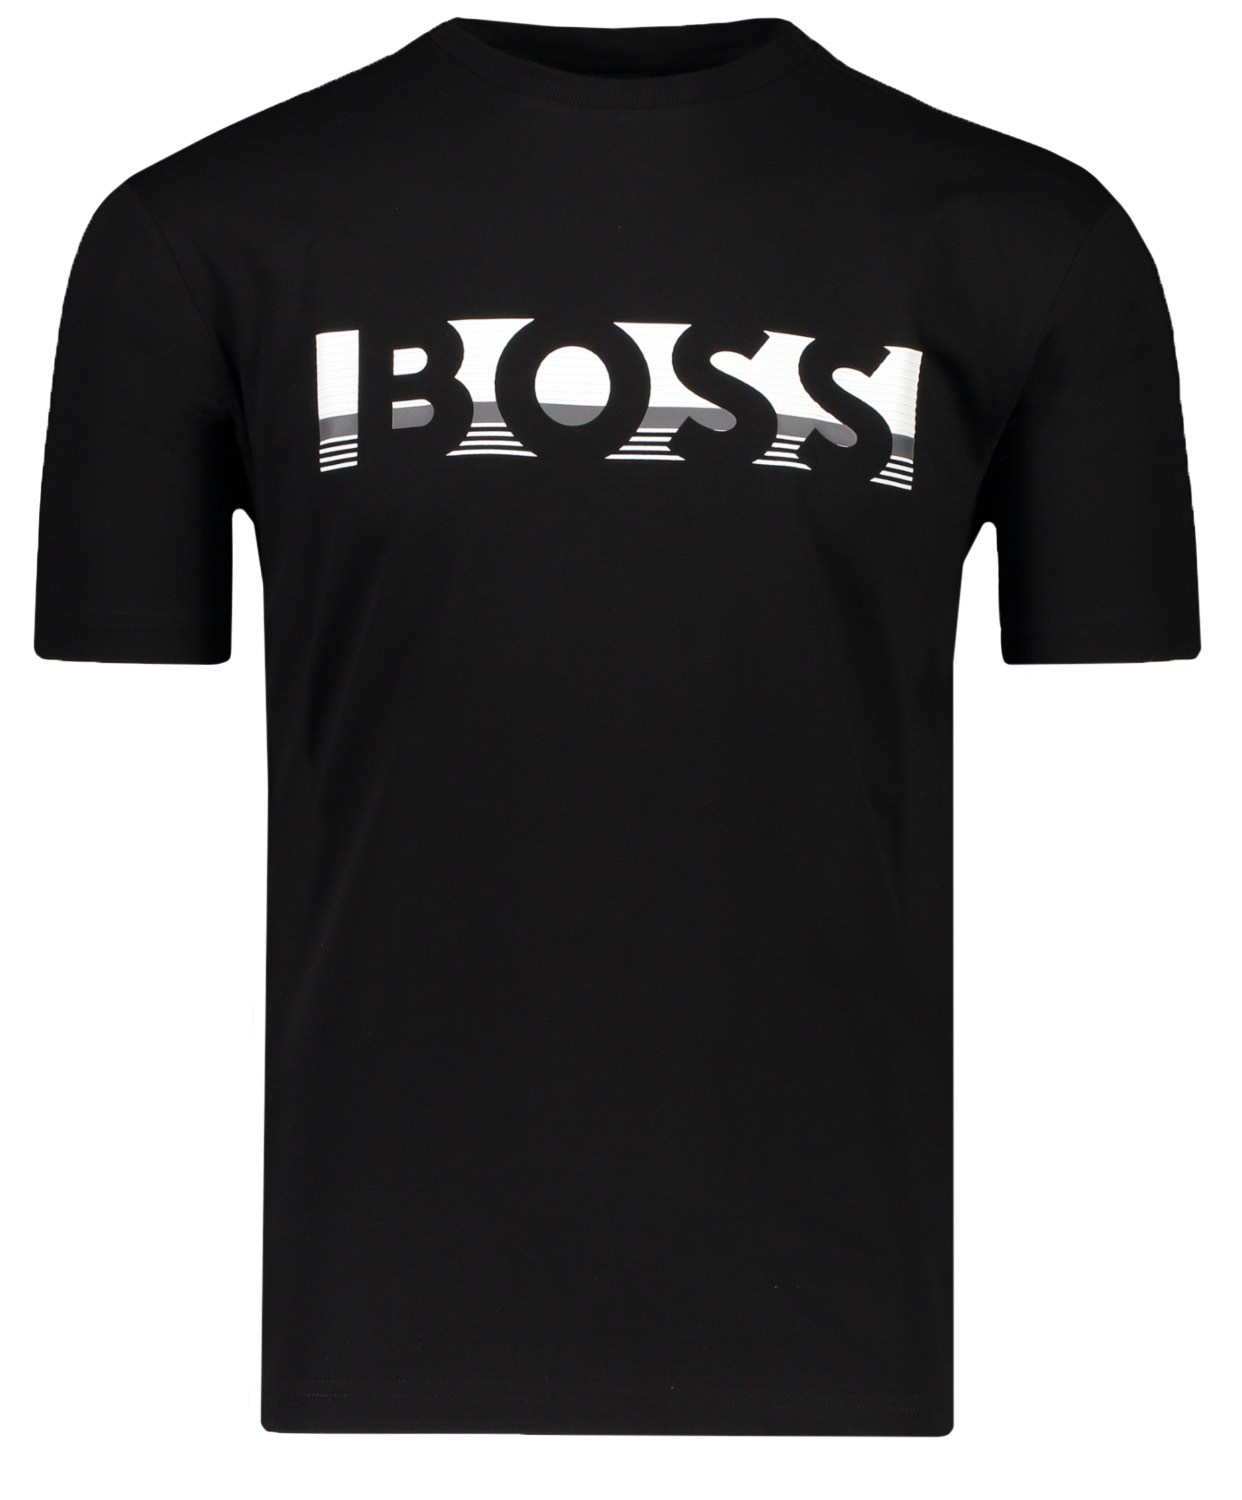 Hugo Boss t-shirt Zwart t-shirt shop | Hans voortman